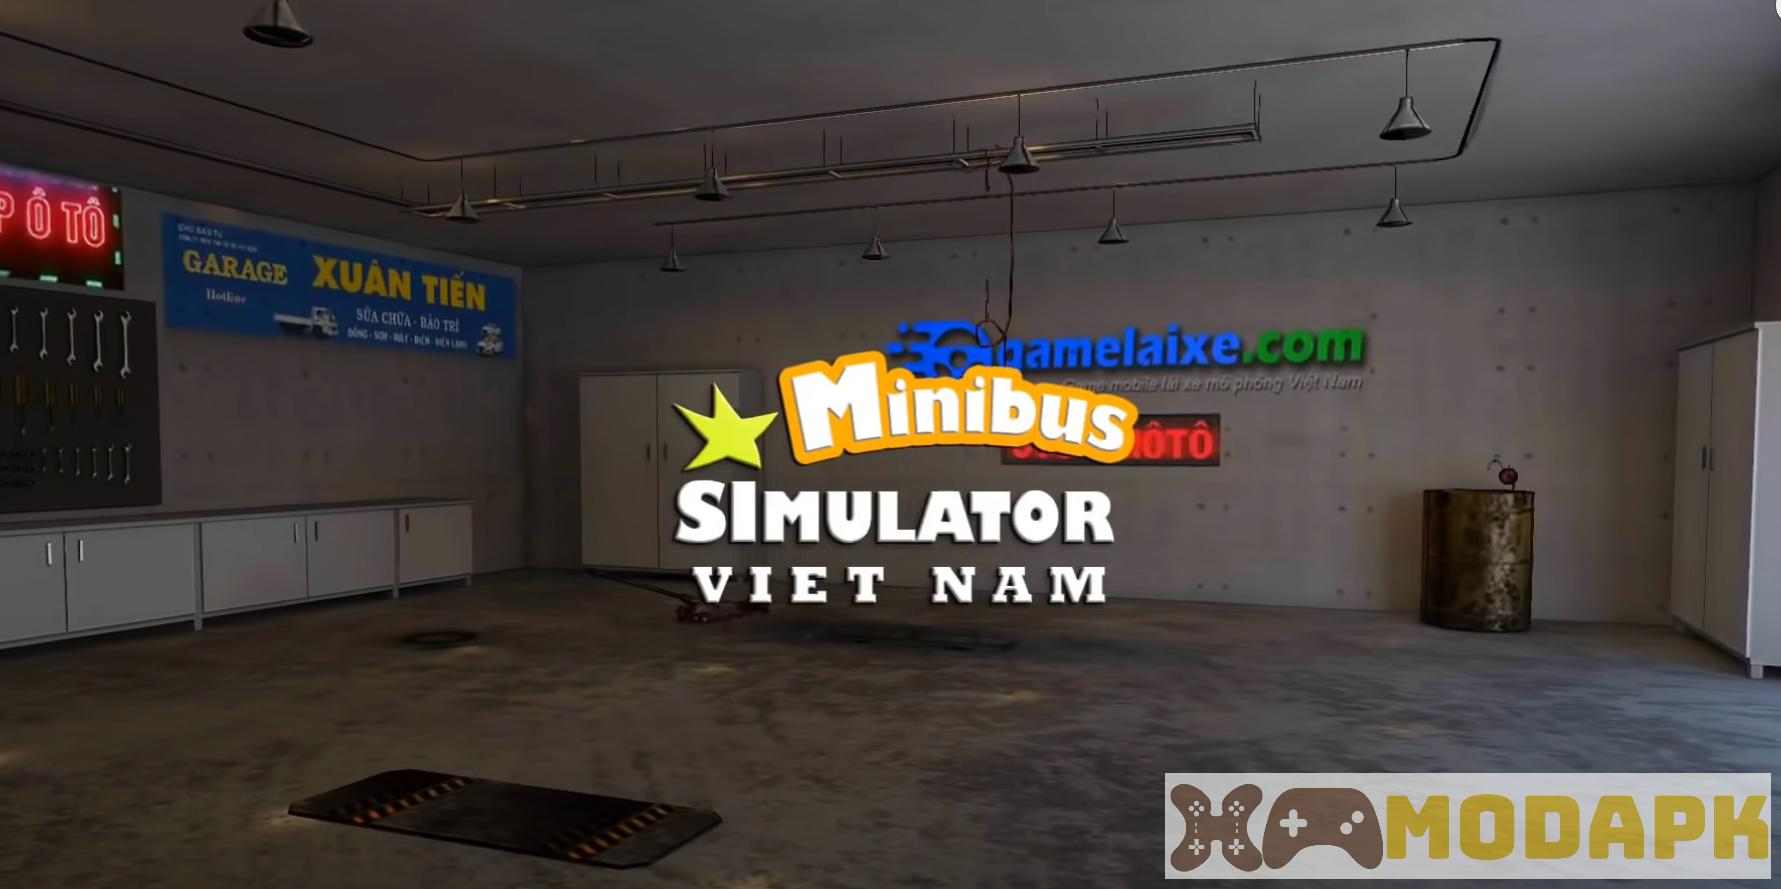 Minibus Simulator Vietnam APK MOD 1.5.9 (Sử Dụng Miễn Phí, Kích Hoạt Tất Cả Tính Năng)